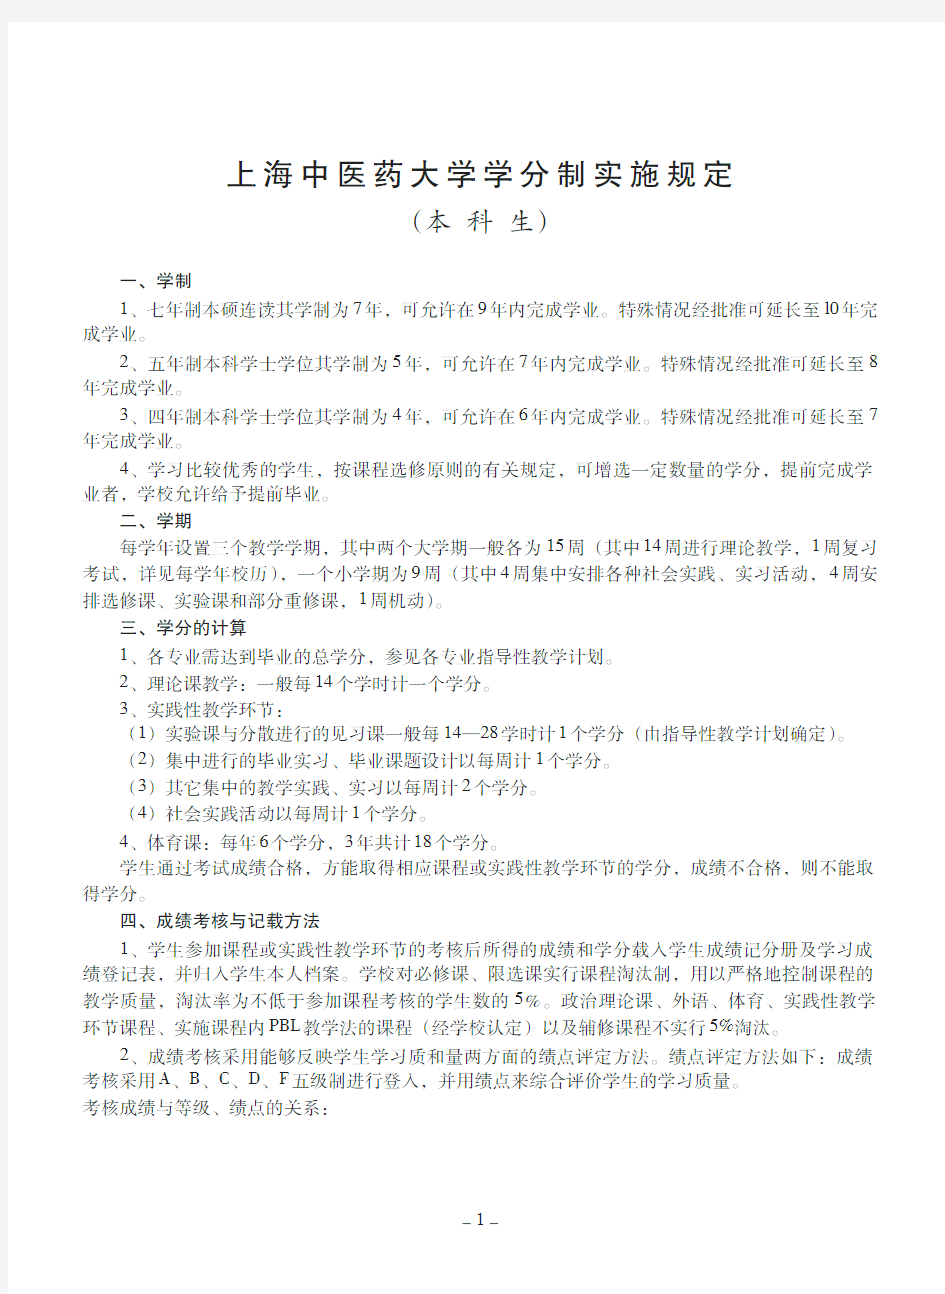 上海中医药大学学分制实施规定-教务处